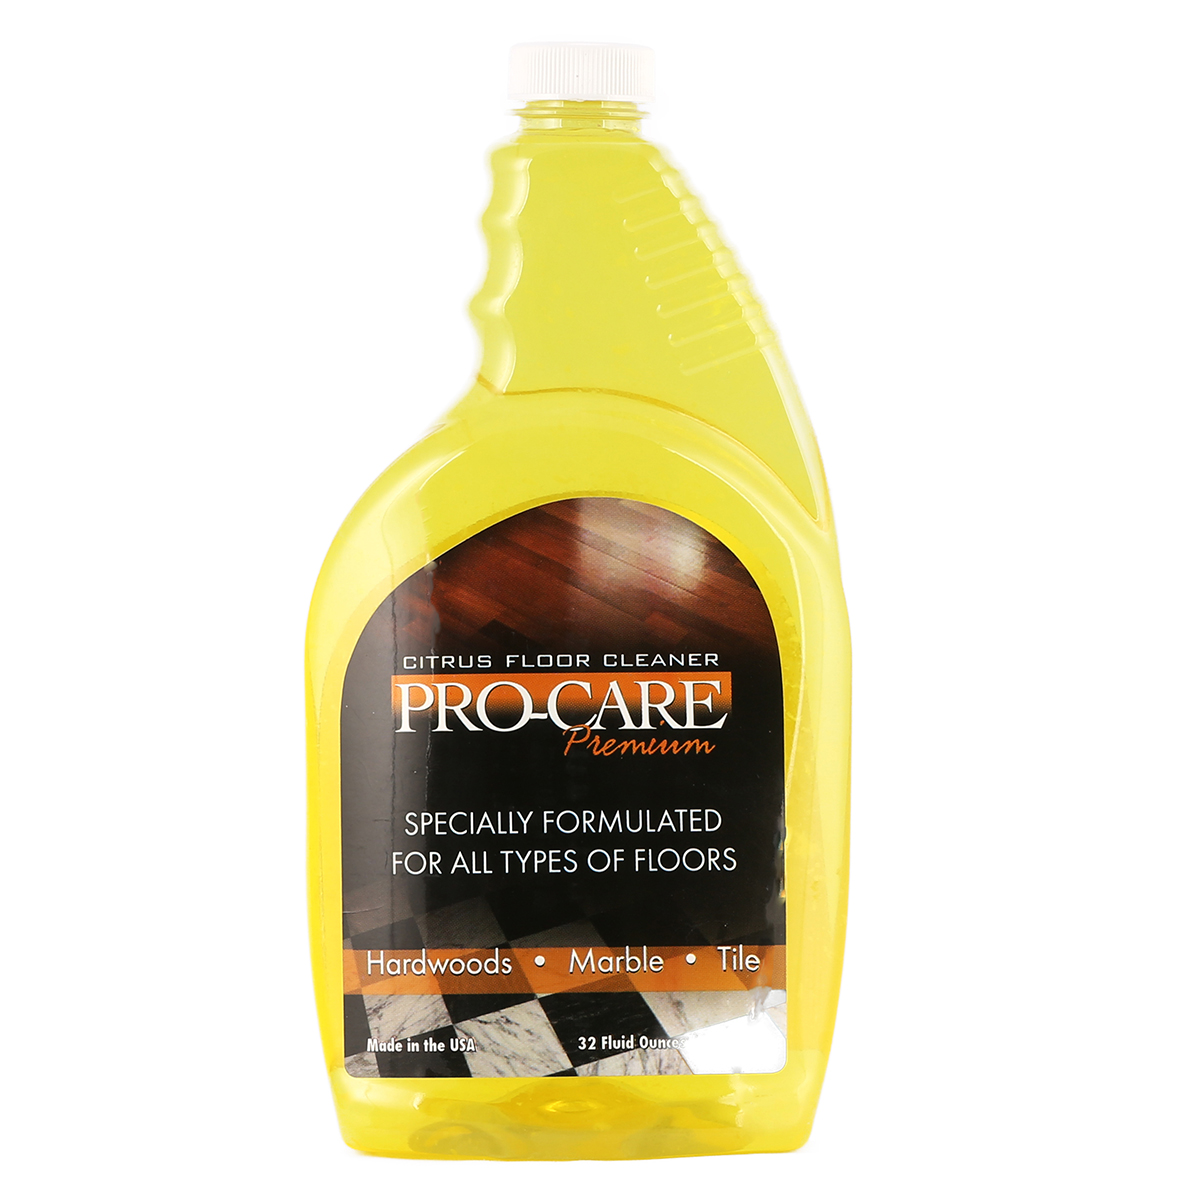 Pro Care Premium Citrus Floor Cleaner